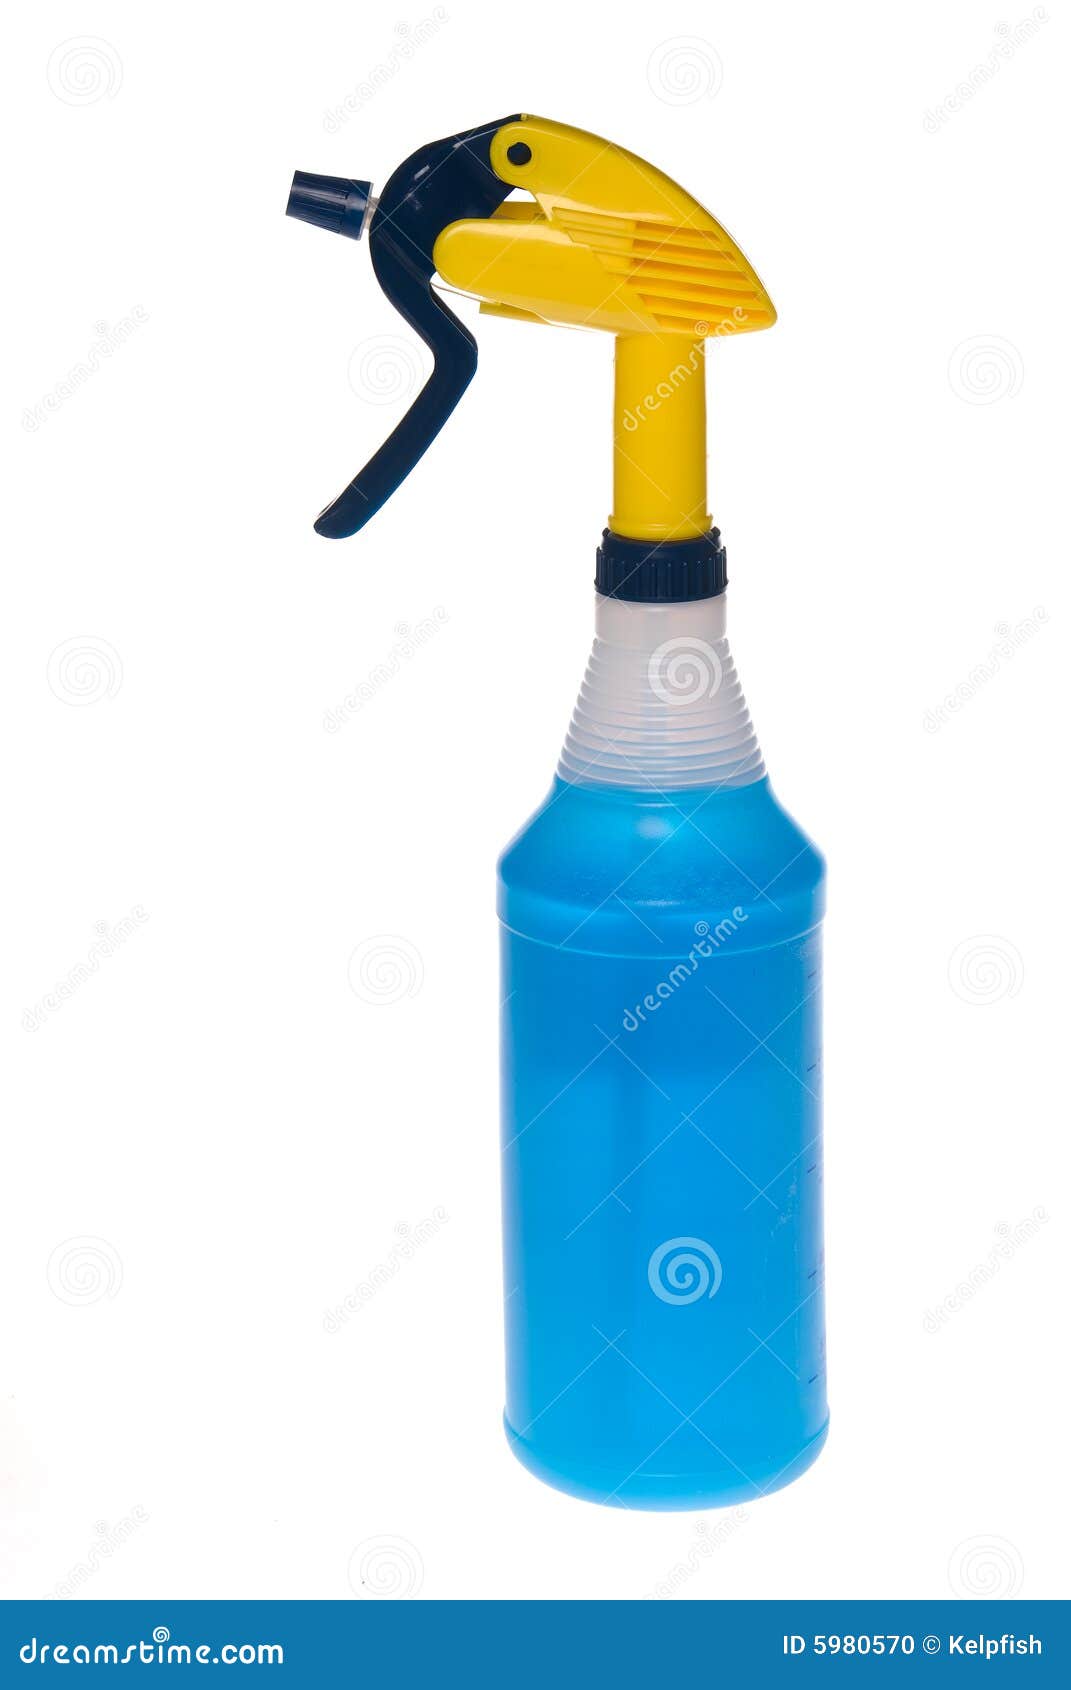 spray bottle of cleaner